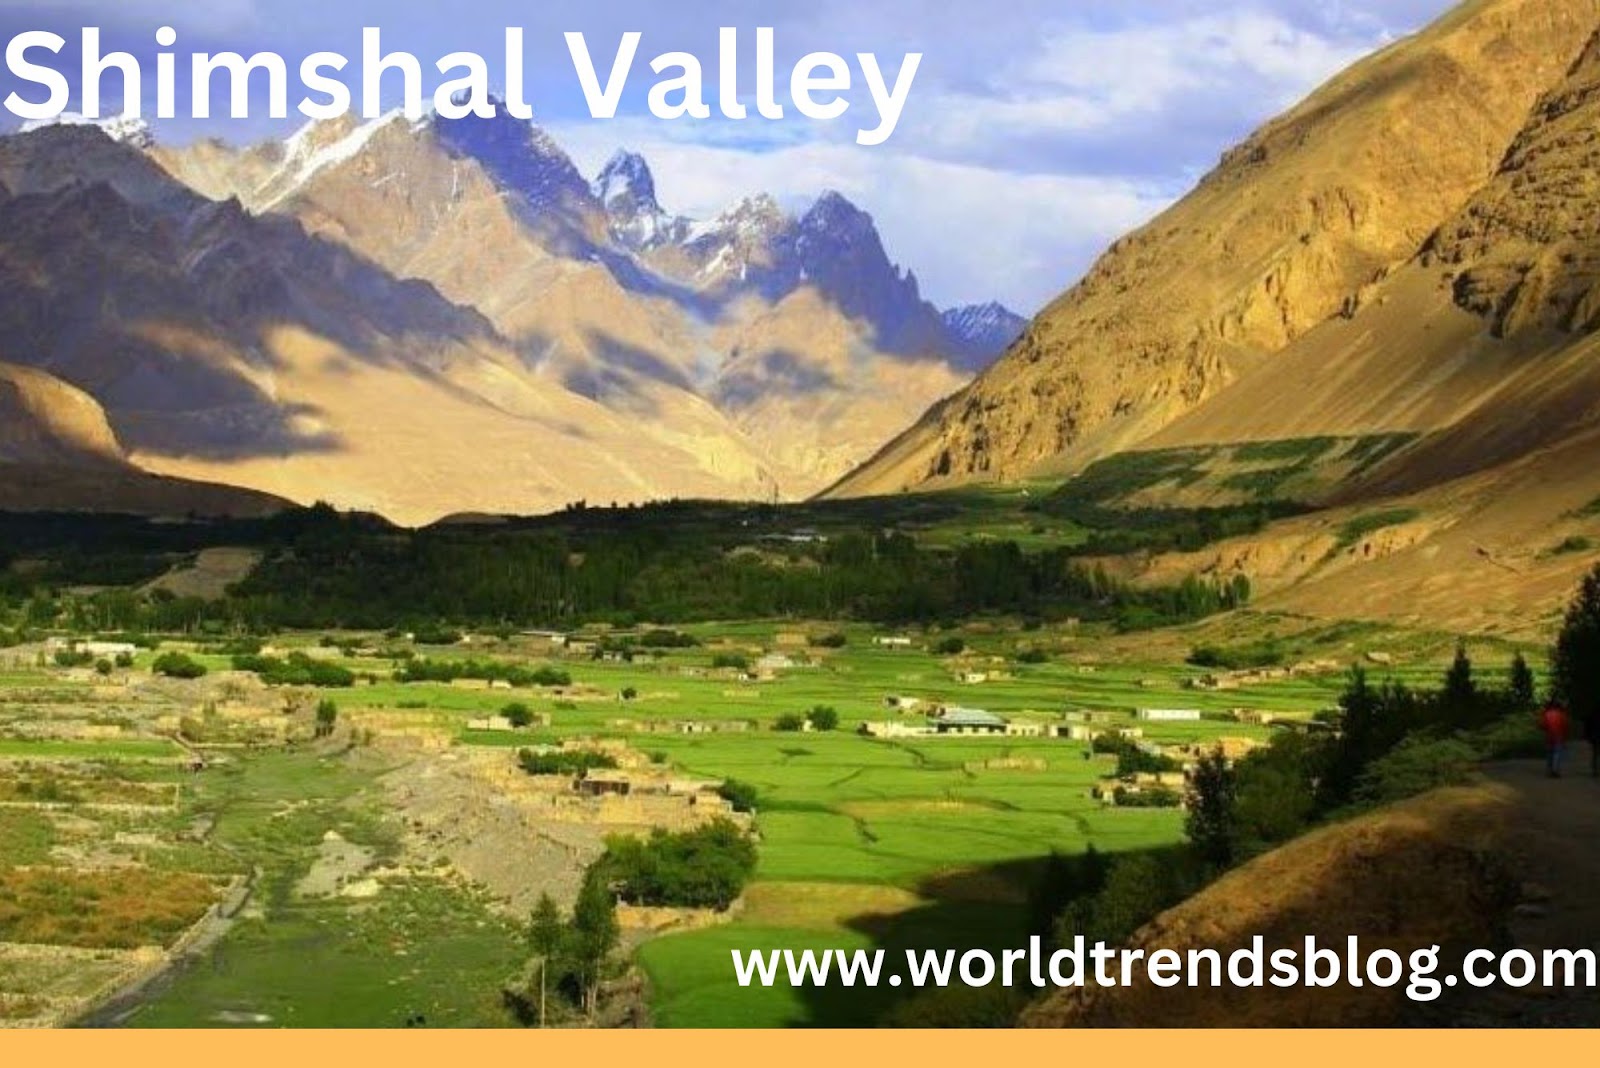 Shimshal Valley Natural Wonder of Pakistan